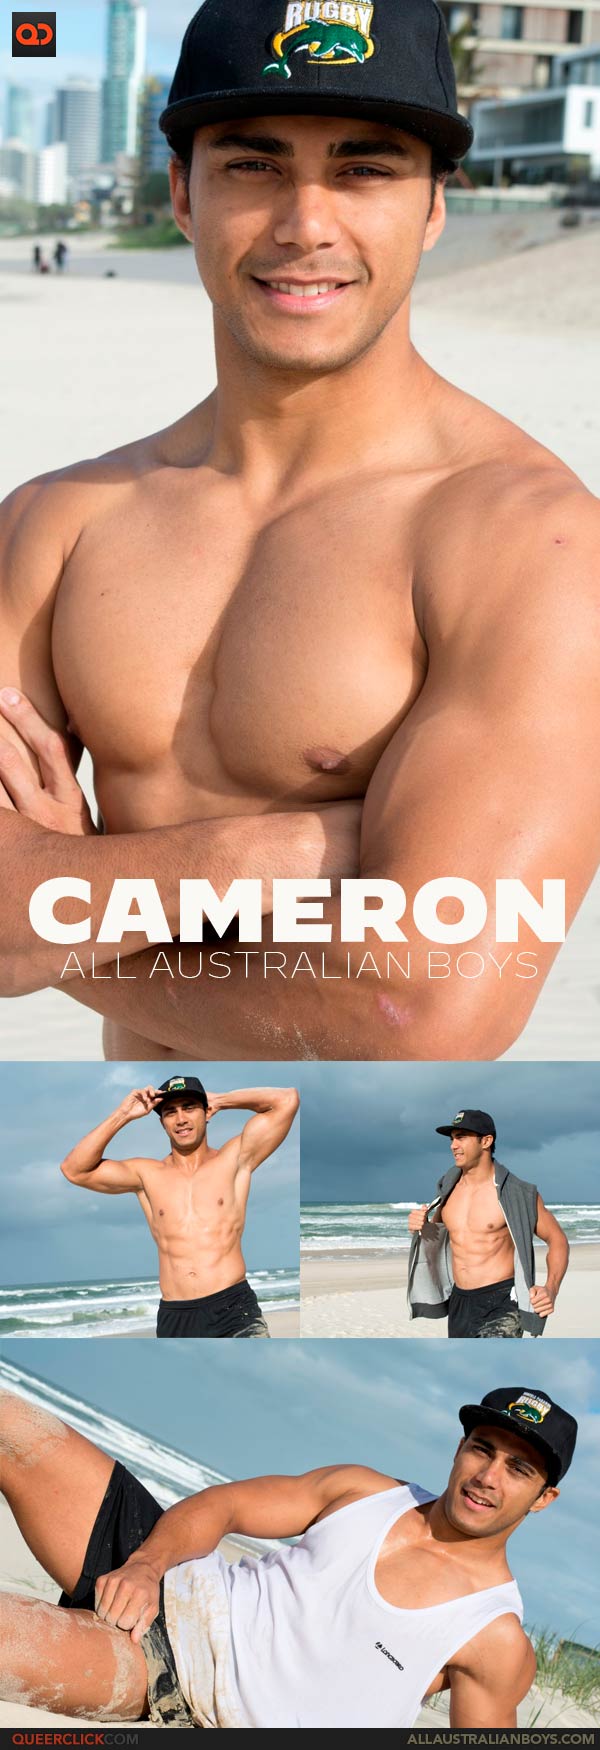 All Australian Boys: Cameron